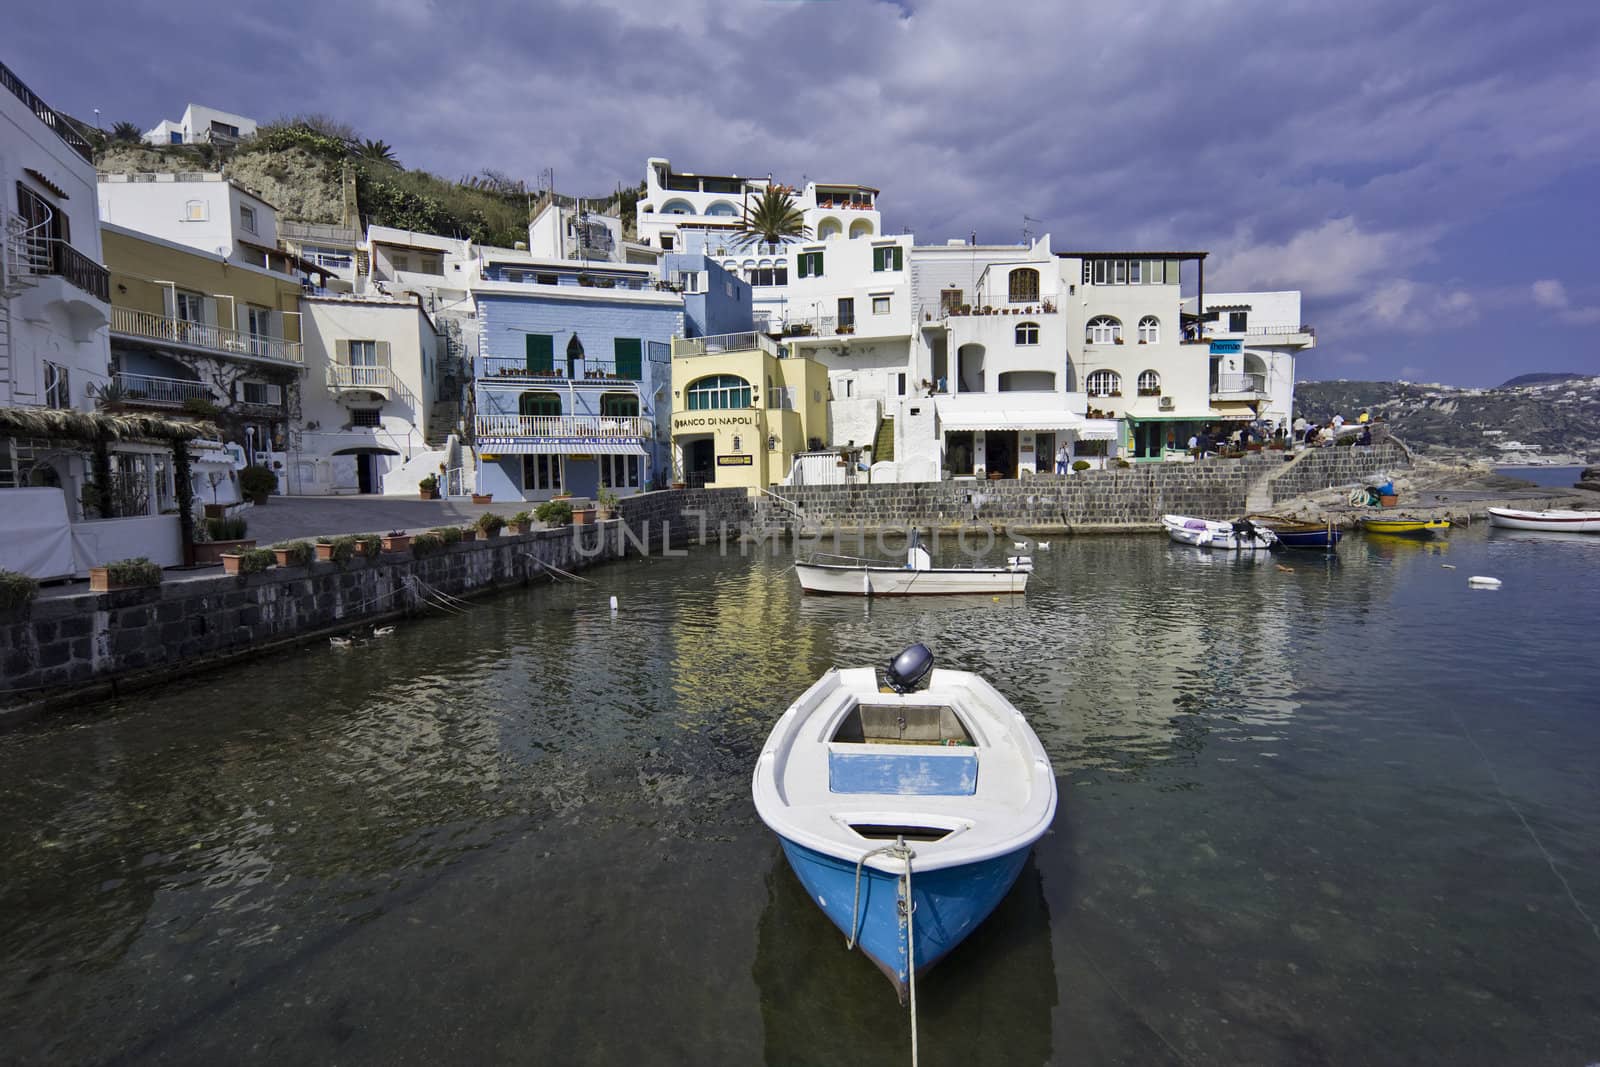 ITALY, Campania, Ischia island, S.Angelo, fishermen boats at S.Angelo